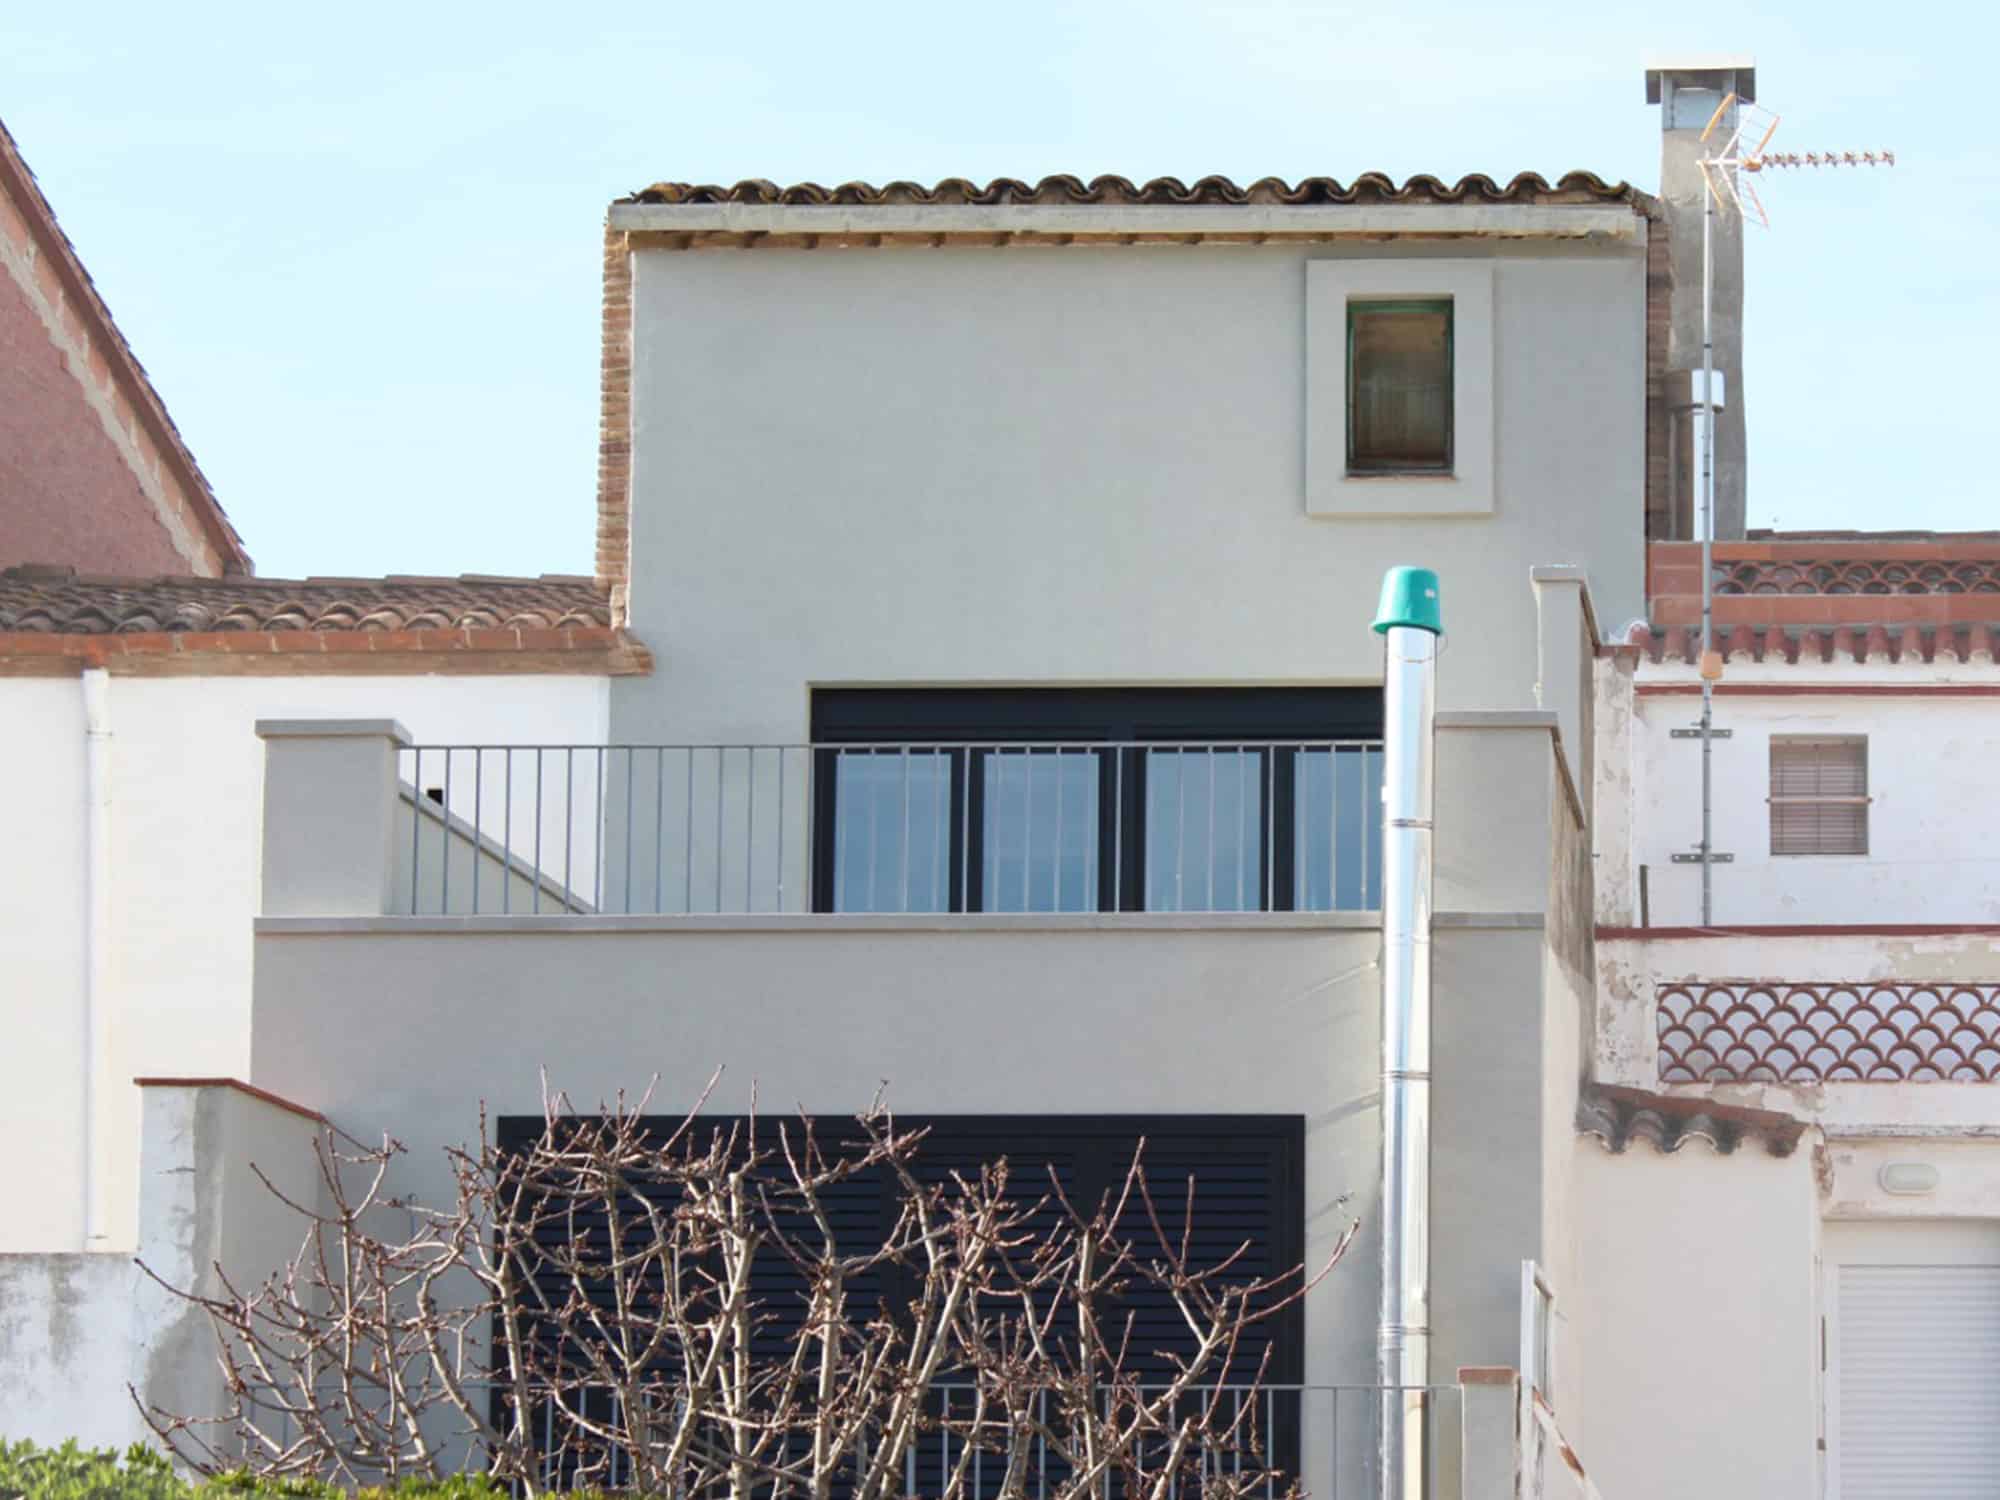 Proyecto de rehabilitación integral de vivienda unifamiliar entre medianeras en Vallbona d’Anoia